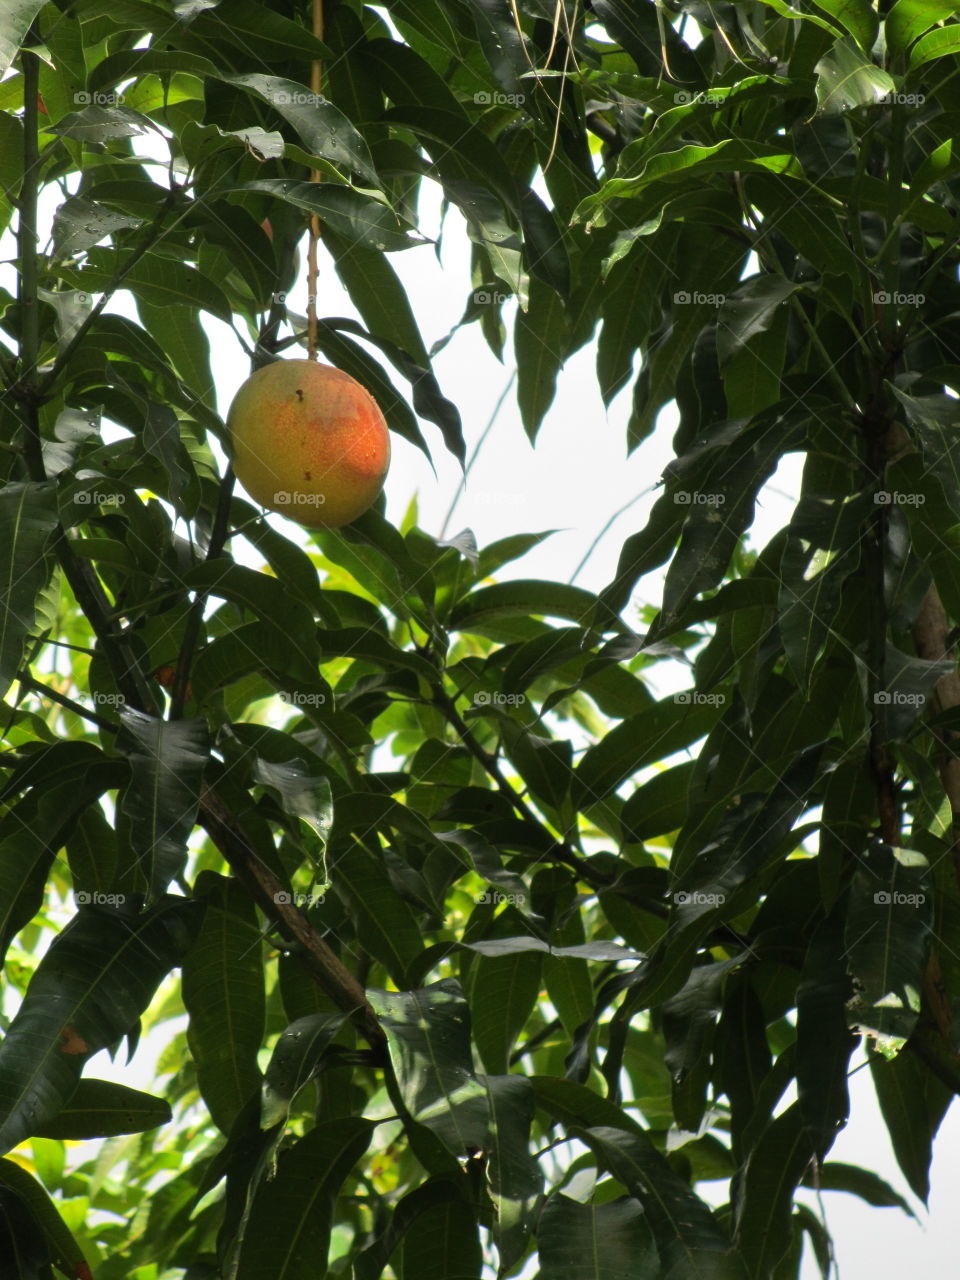 One mango ripening on tree